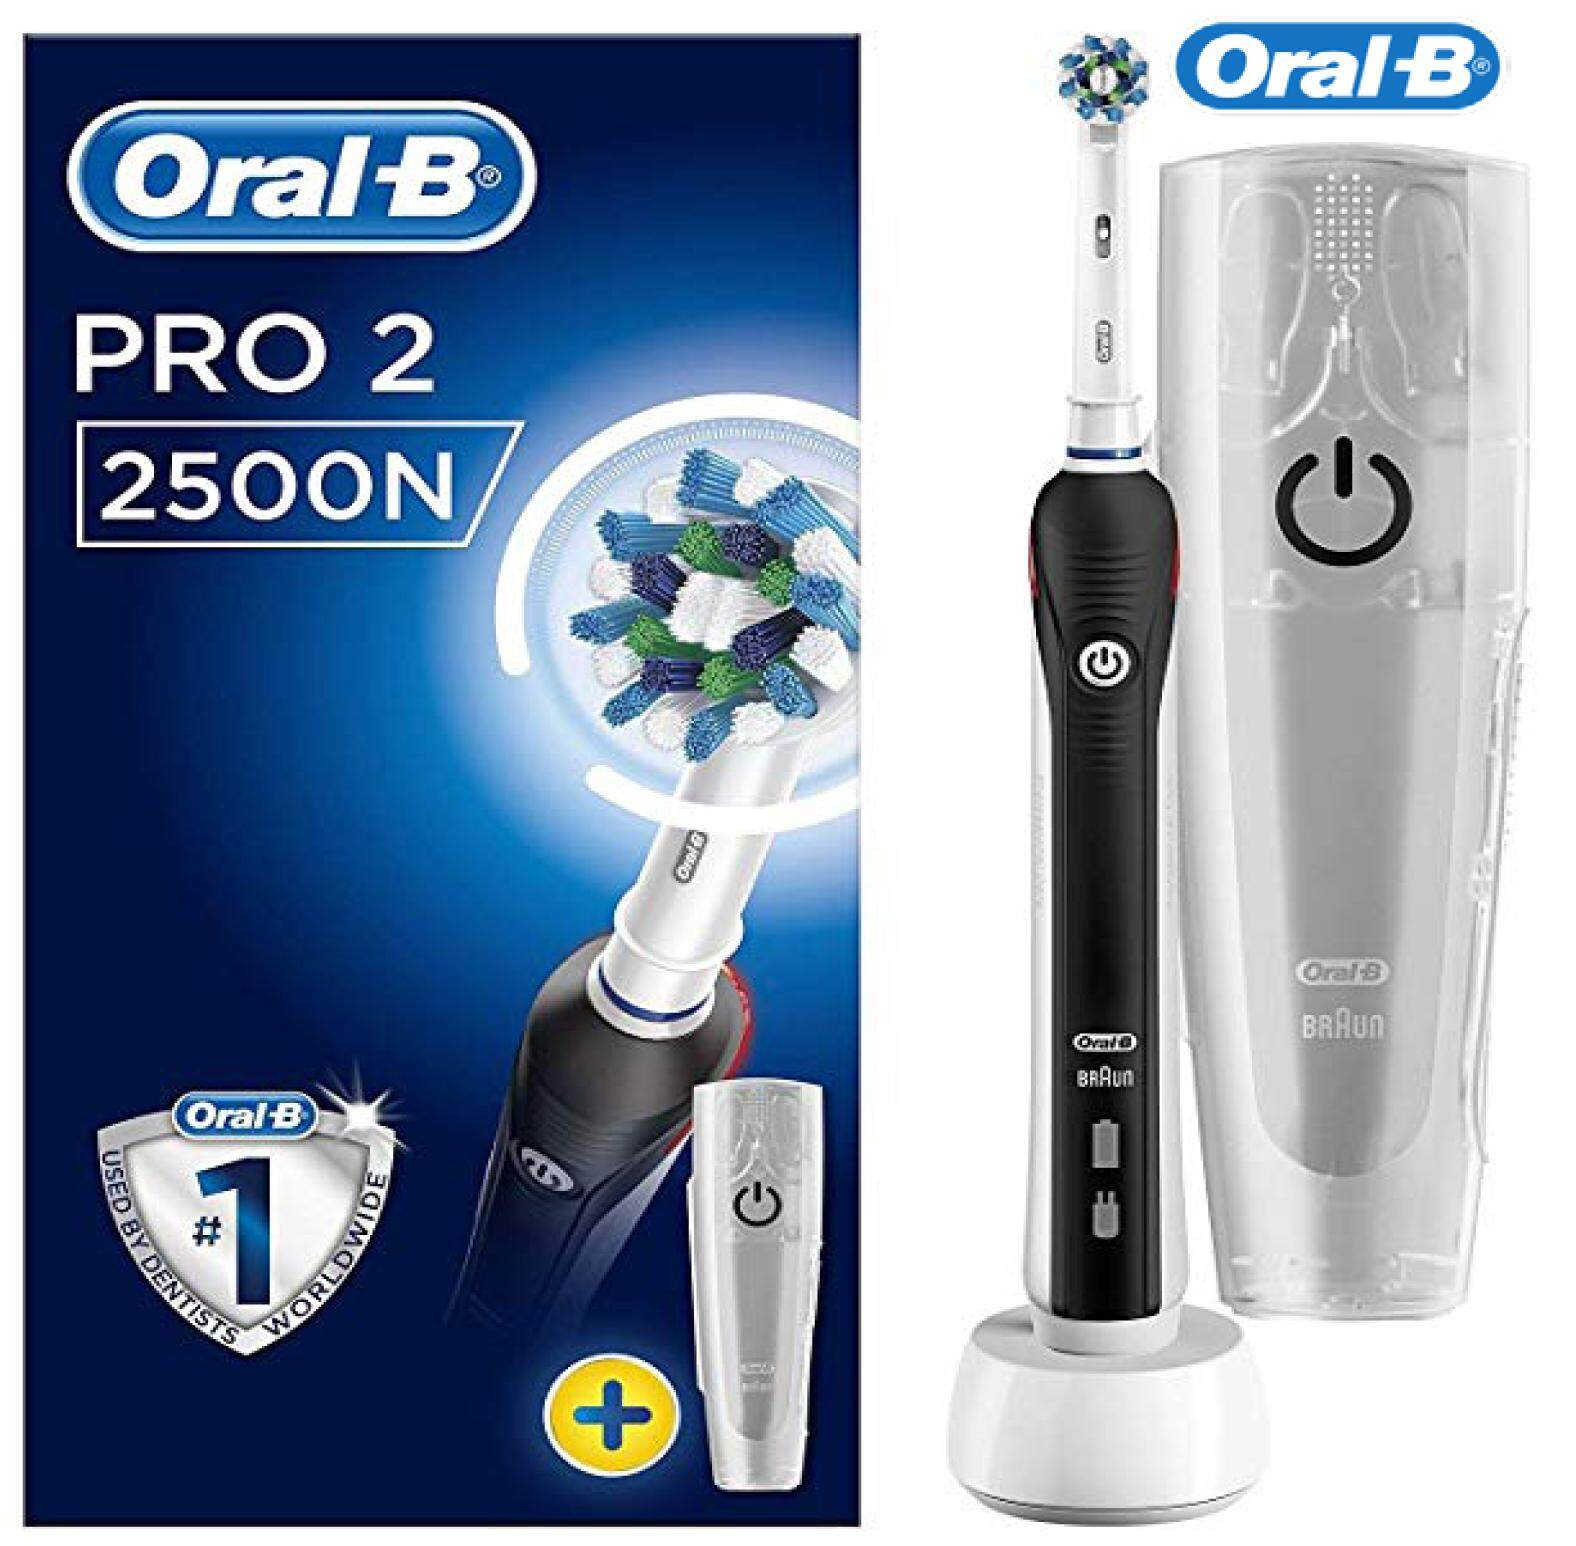 แปรงสีฟันไฟฟ้า ทำความสะอาดทุกซี่ฟันอย่างหมดจด อ่างทอง Oral B Electric Toothbrush   Black  Pro 2  2500 N with Bonus Oral B Travel Case  24 Month Warranty 